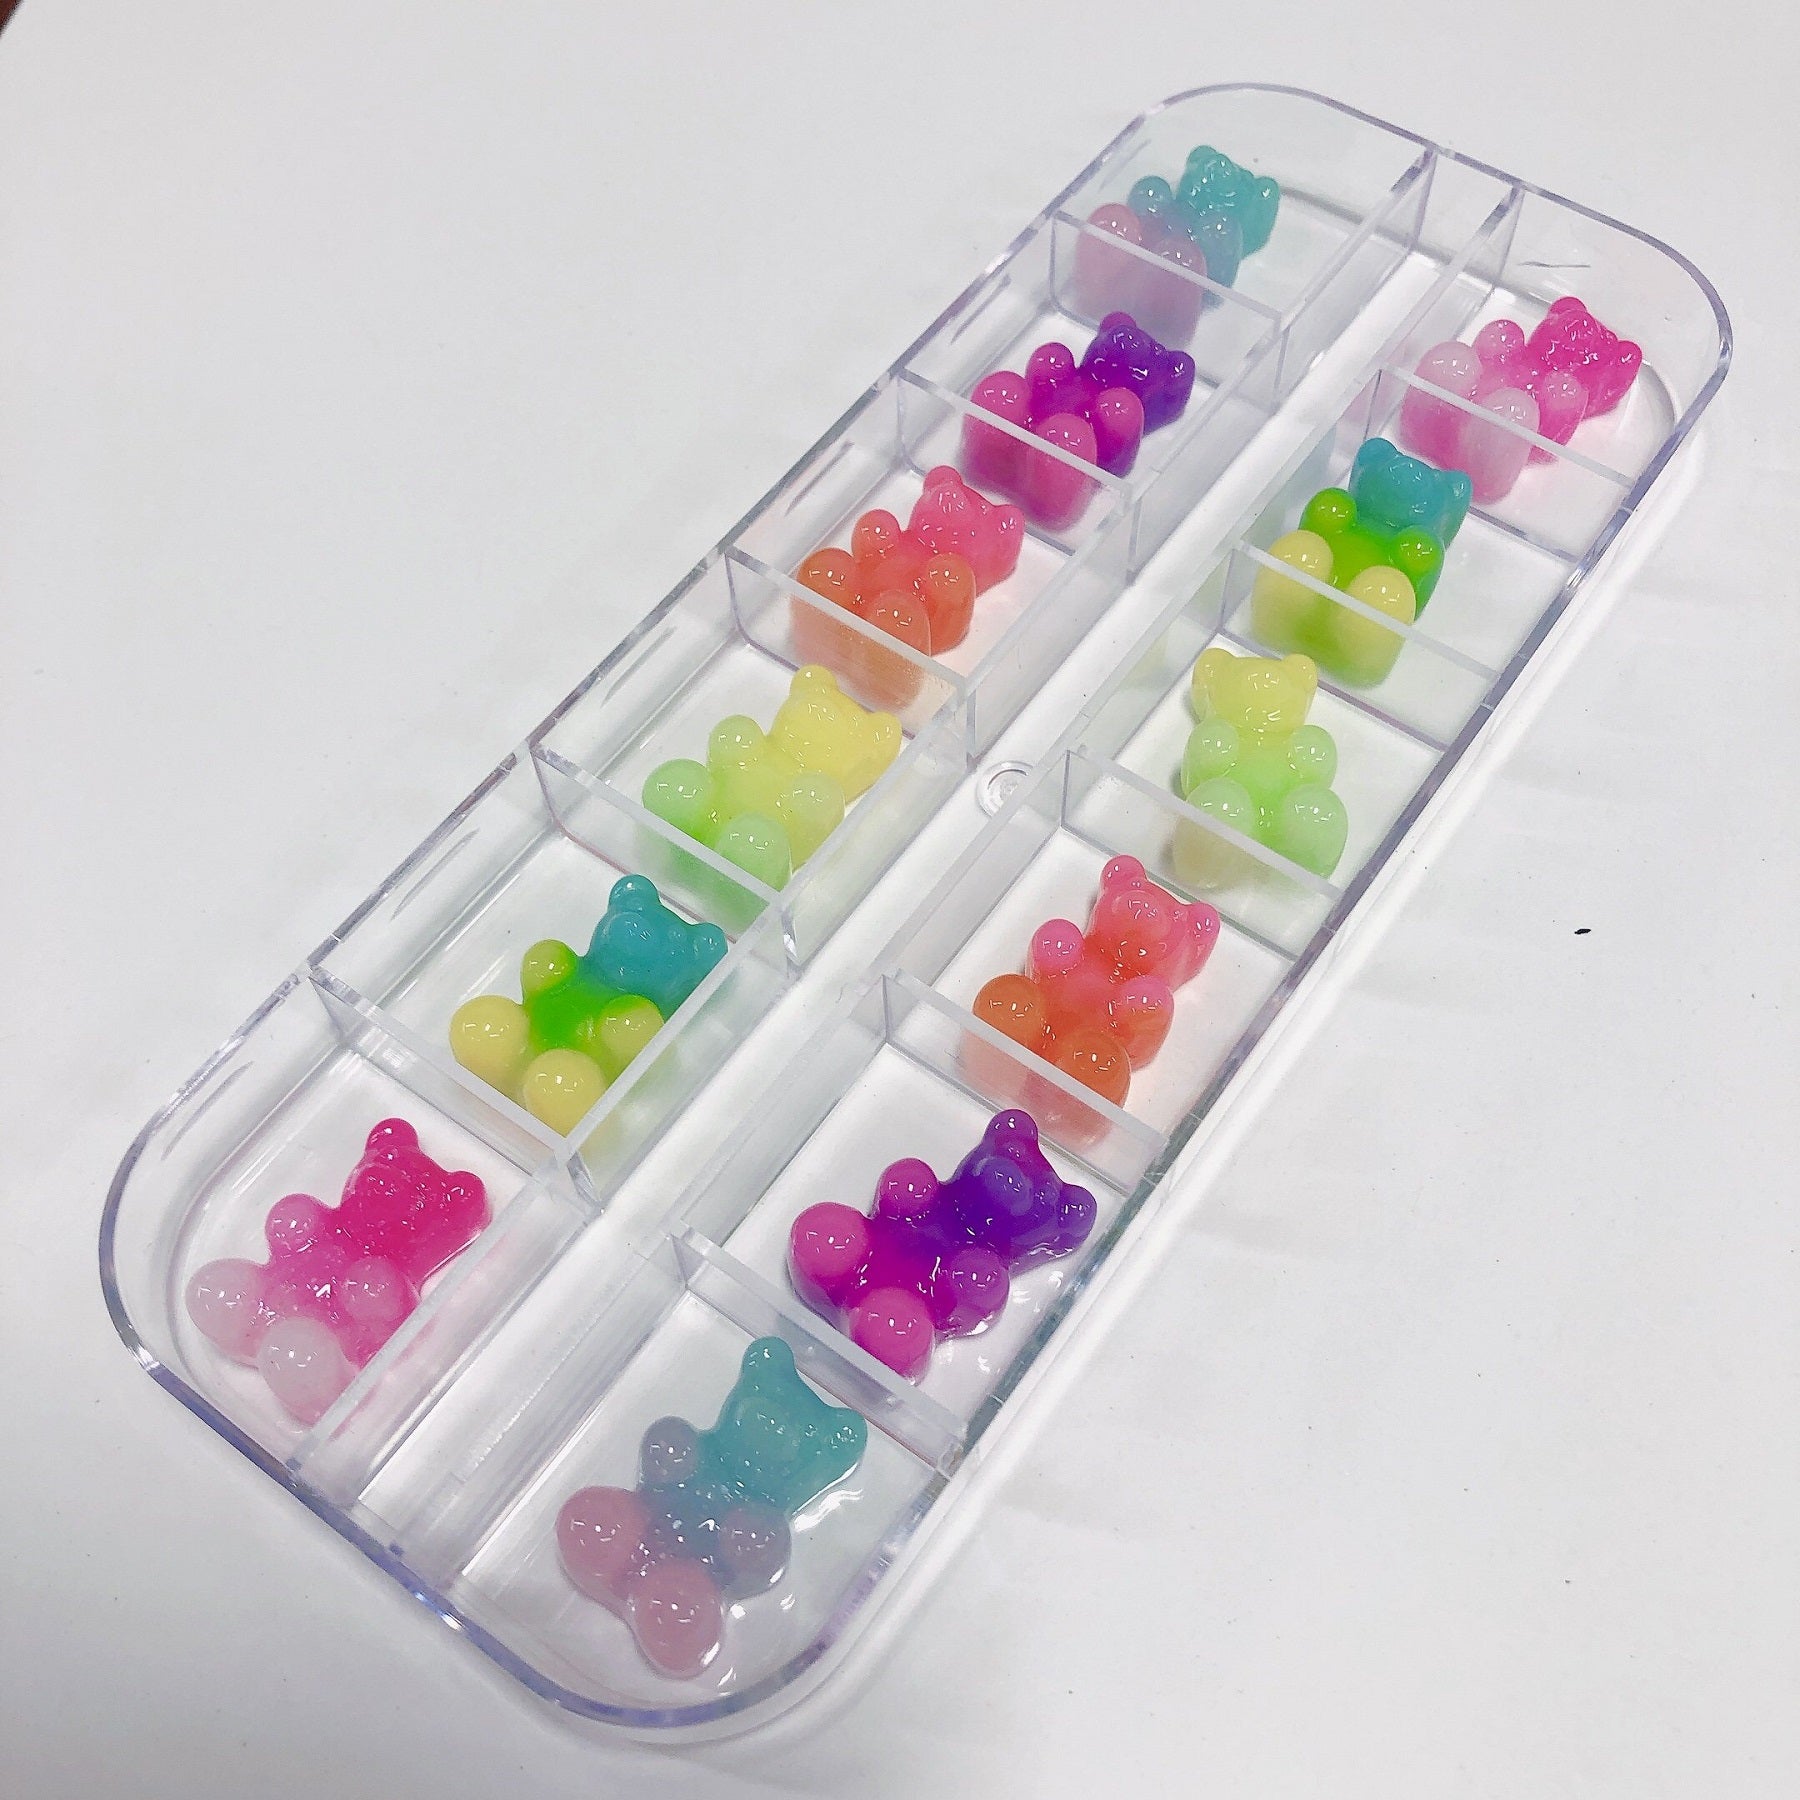 Kawaii Charms - 3D Gummy Bear for Nail Decoration